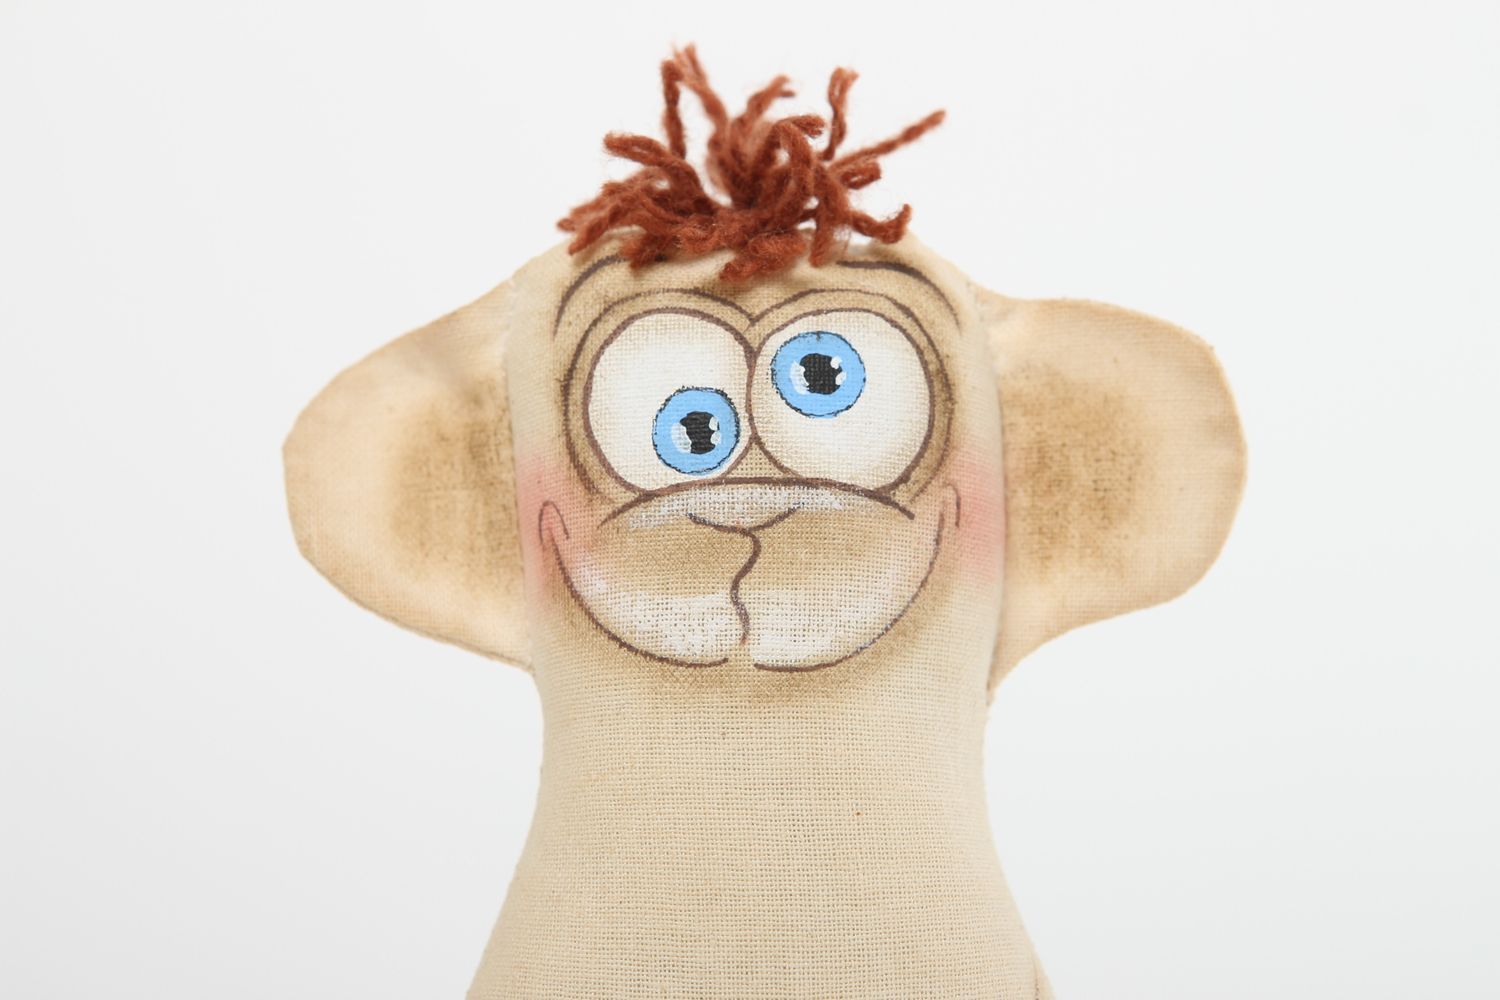 Текстильная игрушка обезьянка ручной работы мягкая игрушка декор для дома фото 3